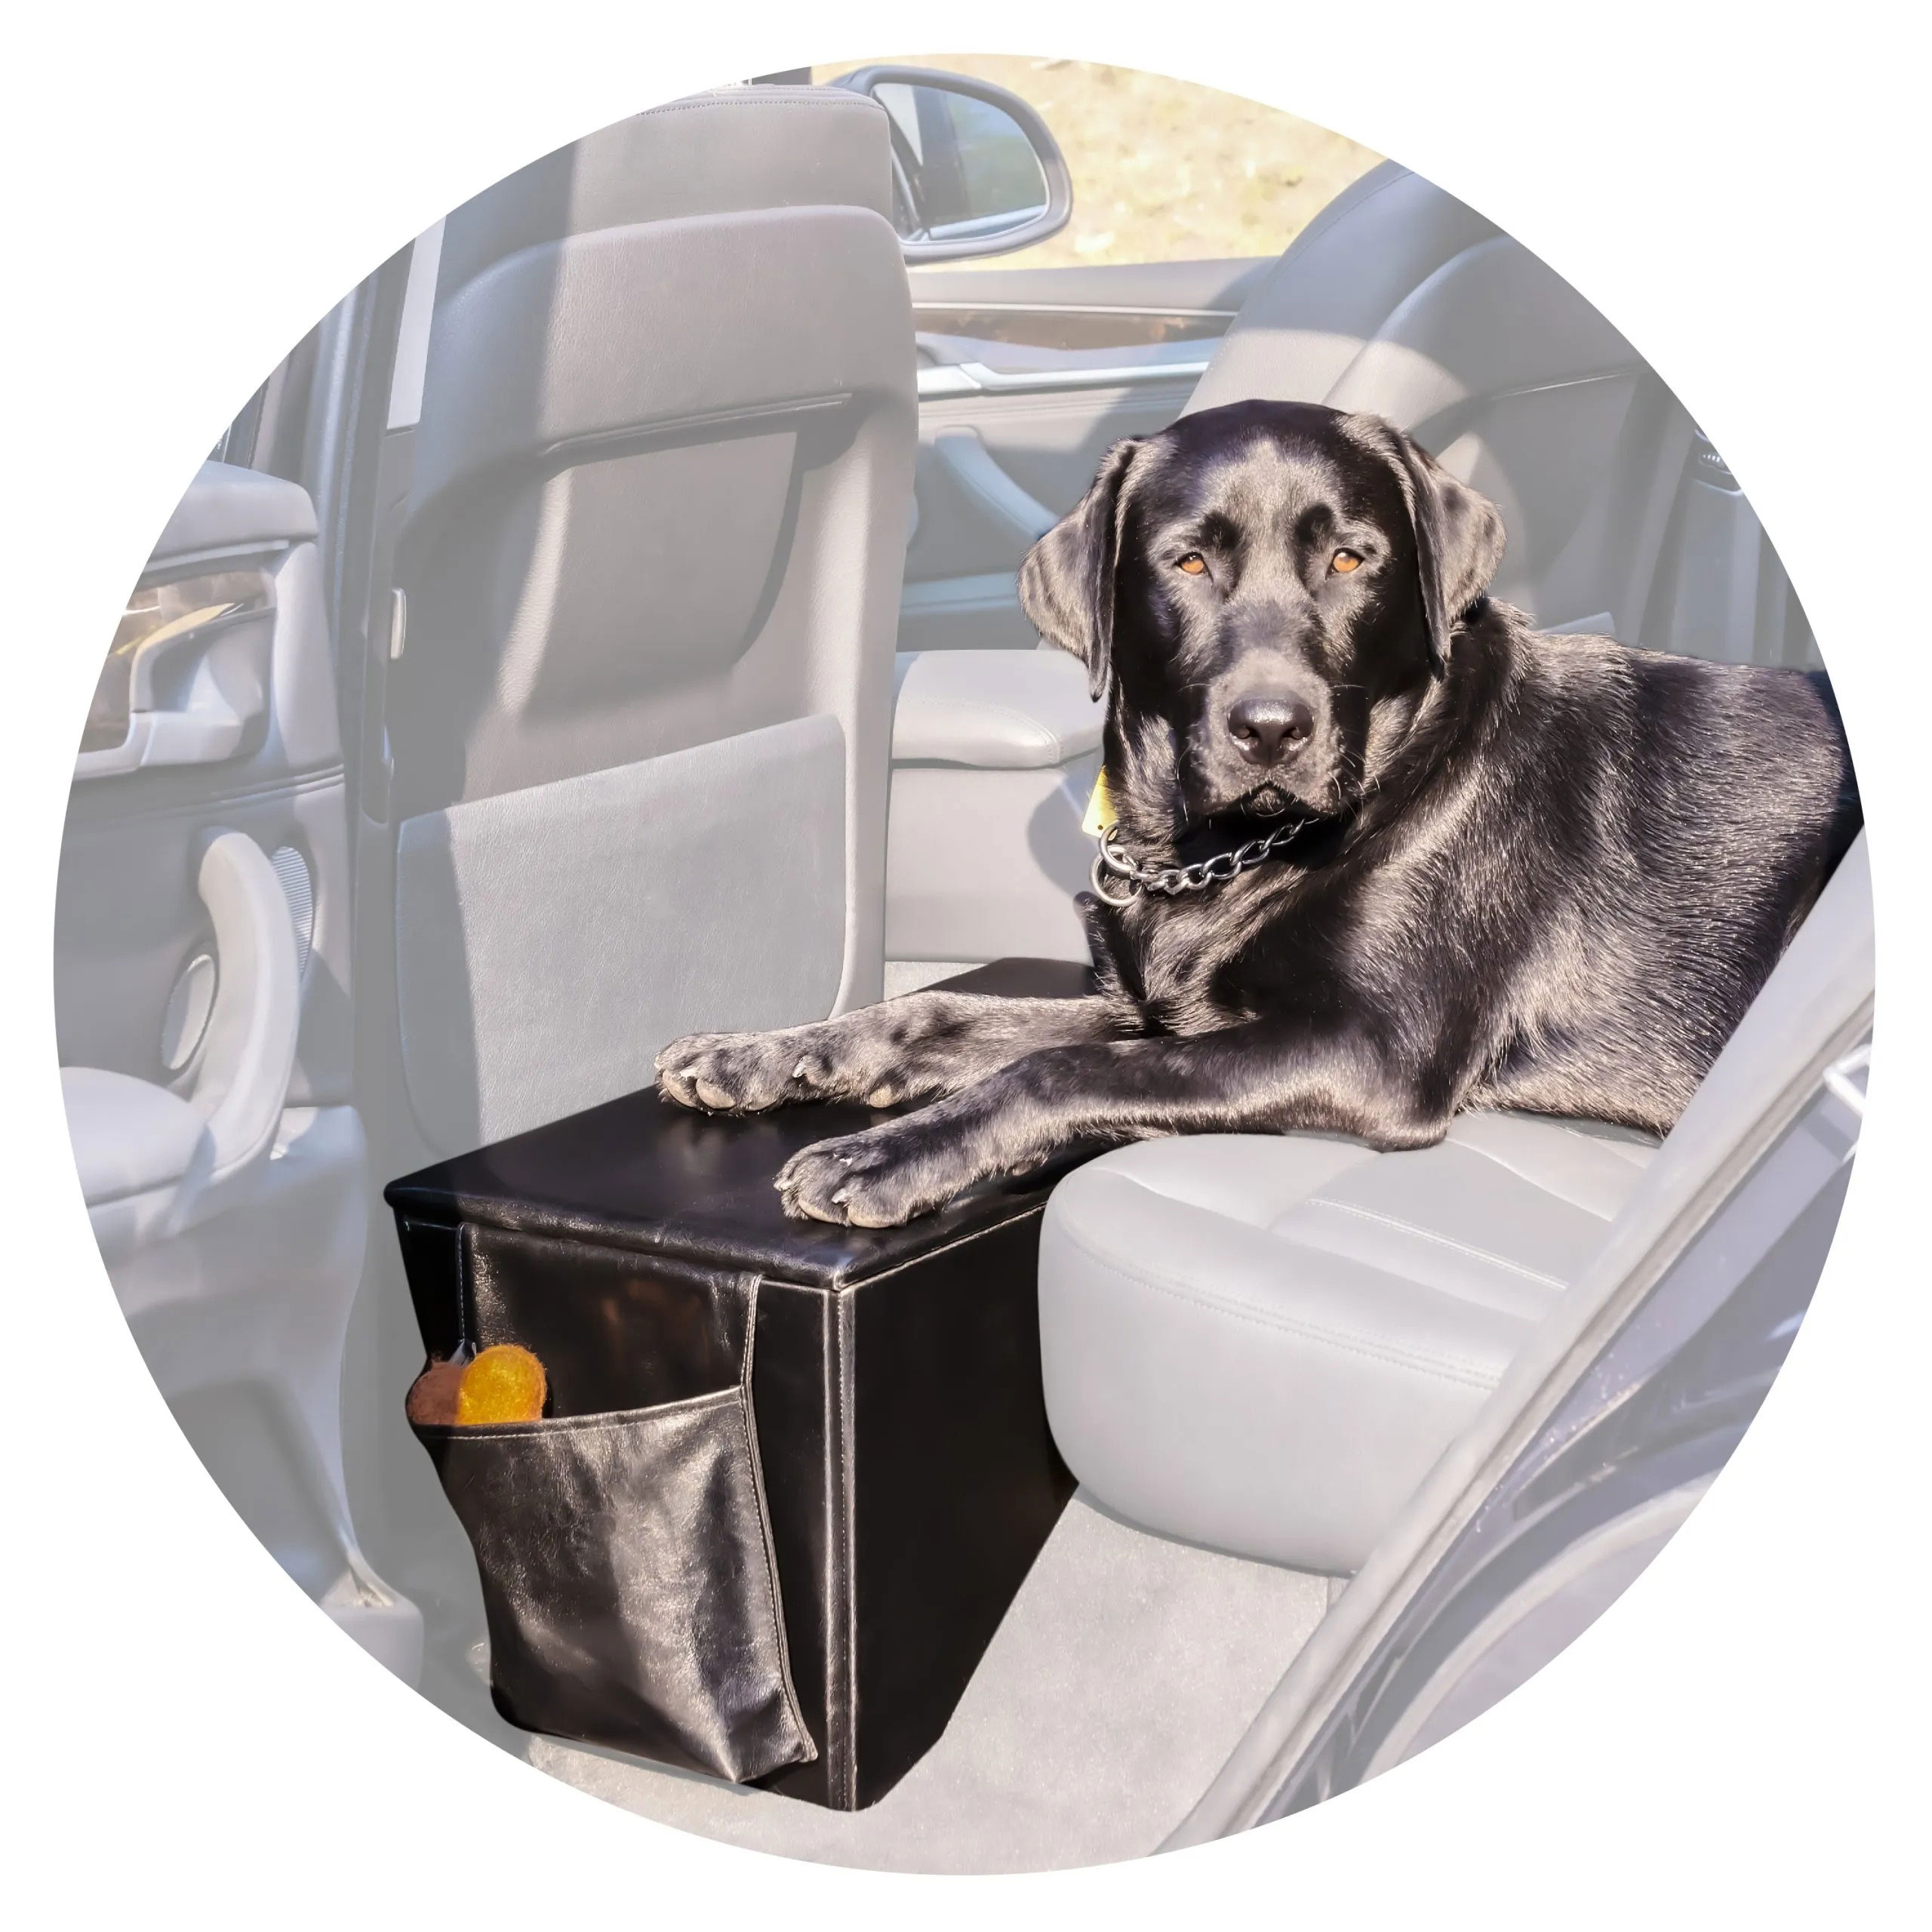 Back Seat Extender for Dogs, Car Dog Bed for Backseat, Back Seat Dog